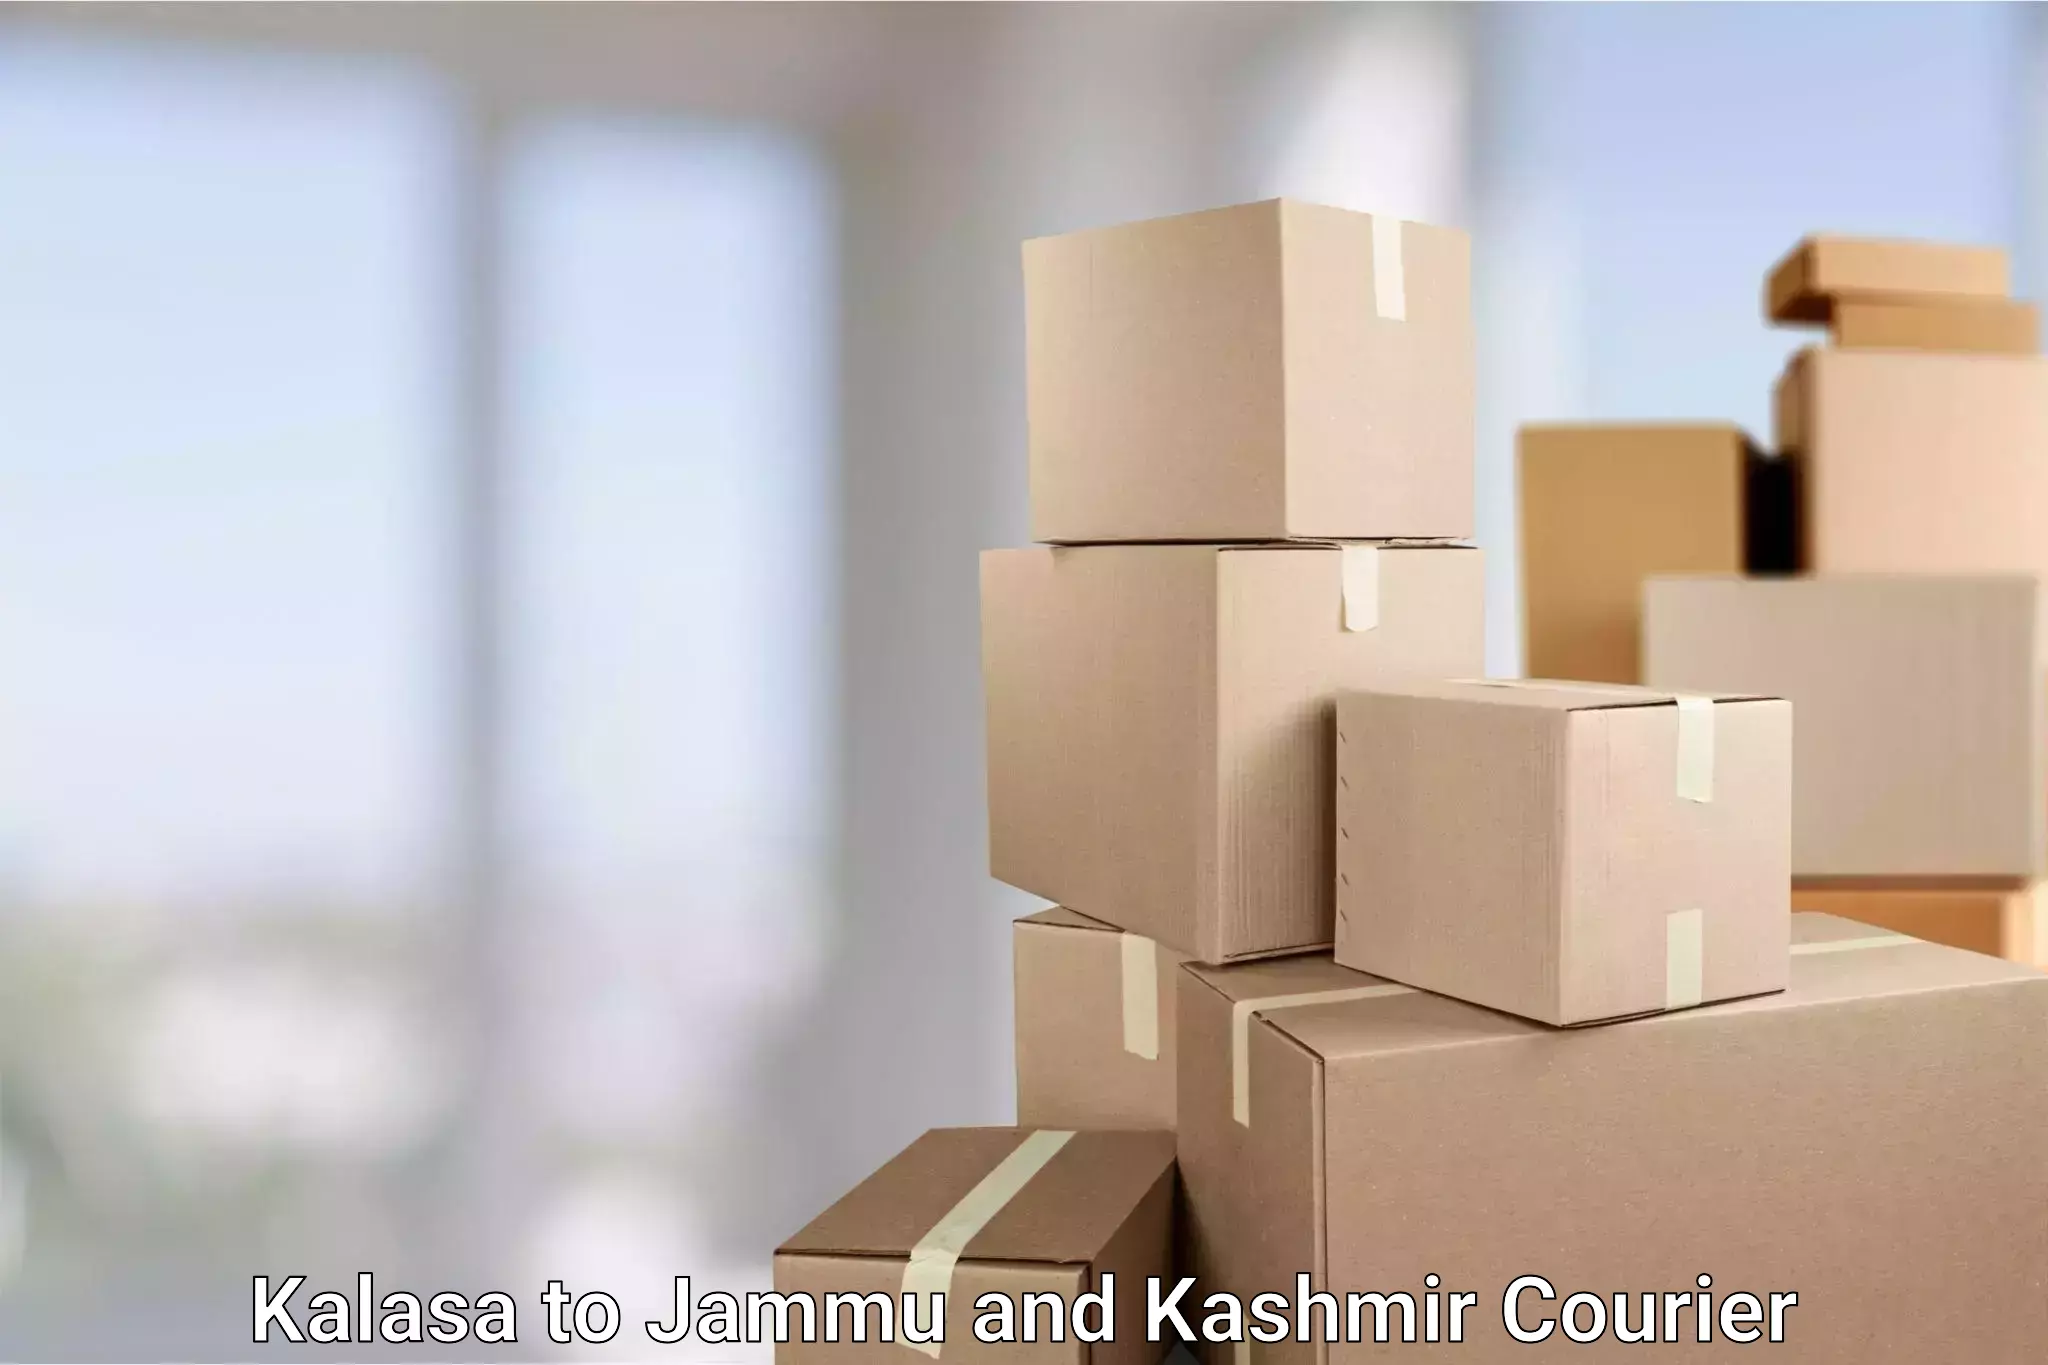 Reliable courier service Kalasa to Jammu